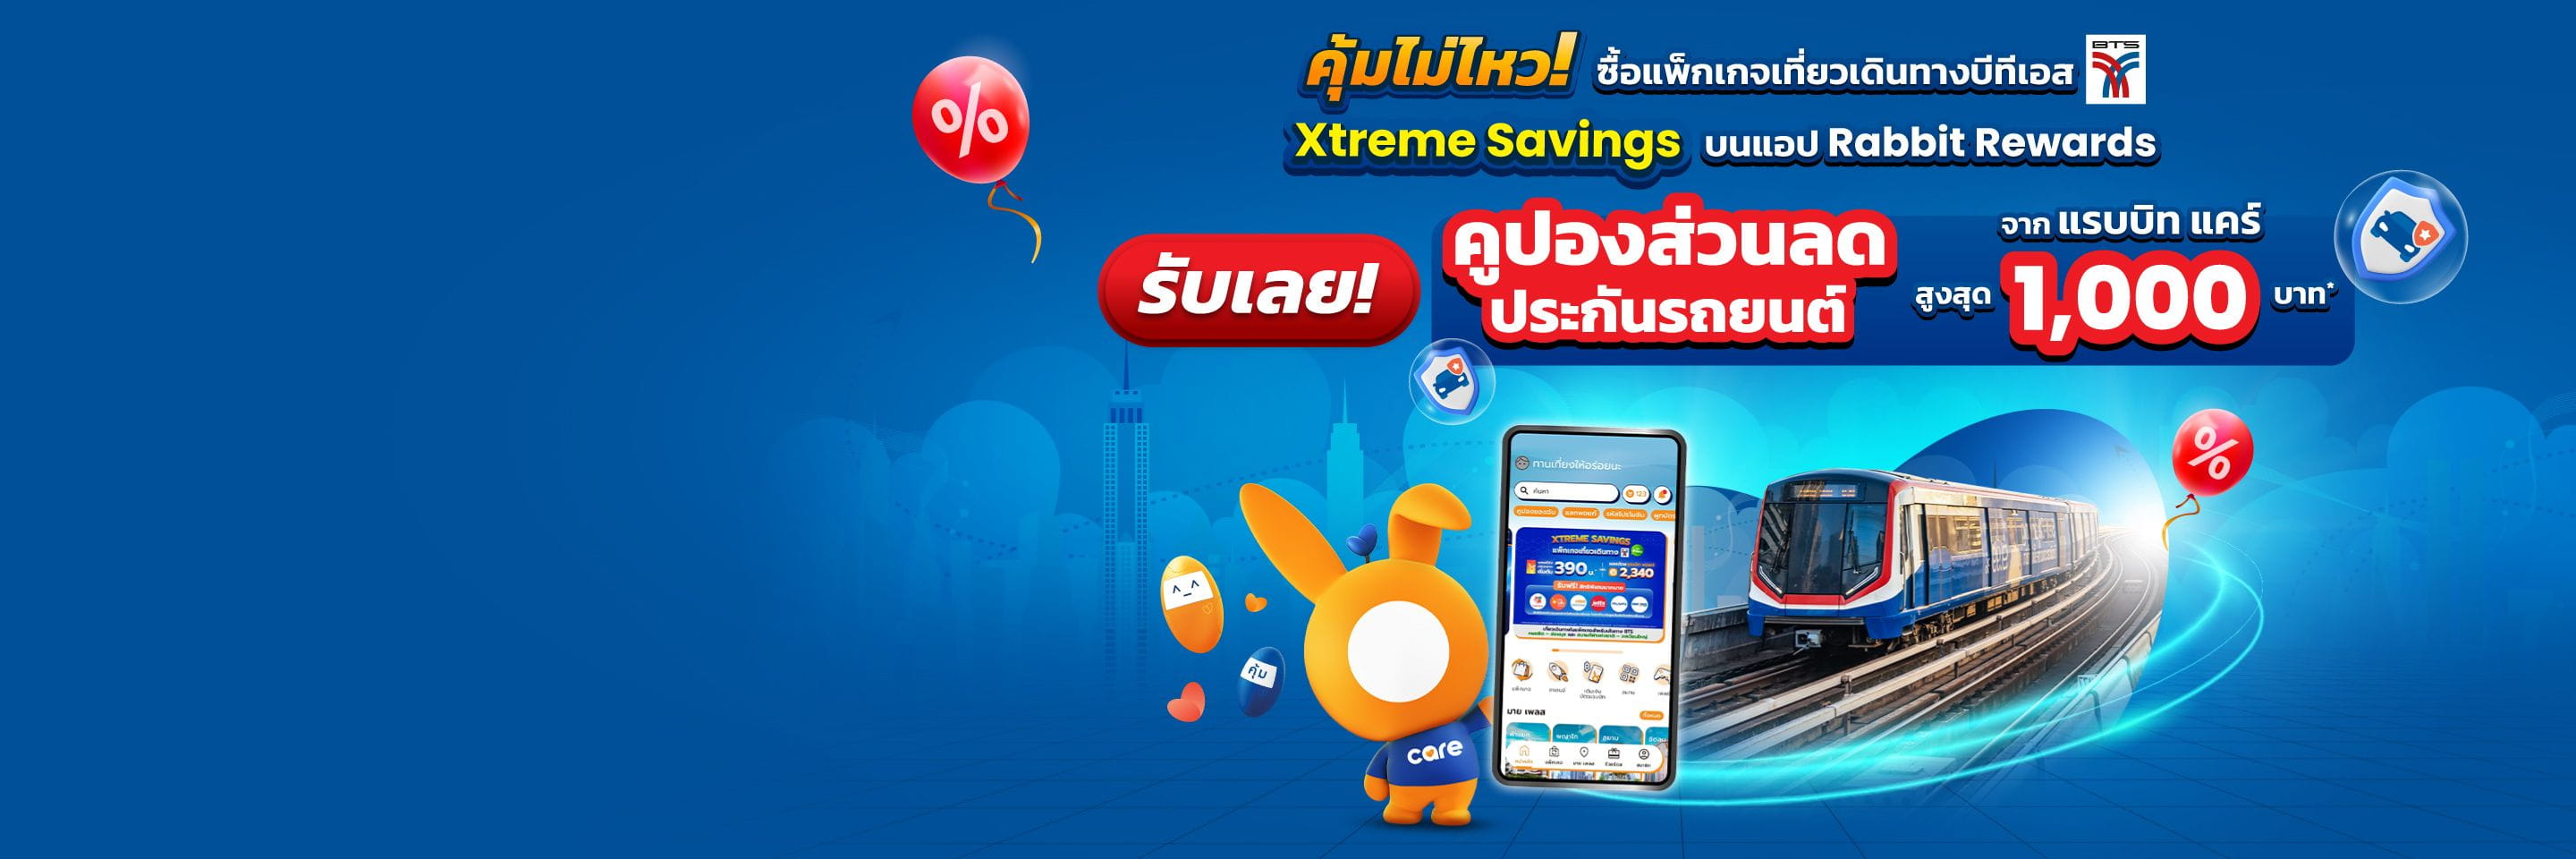 Xtreme-Saving-top-banner-desktop.jpg